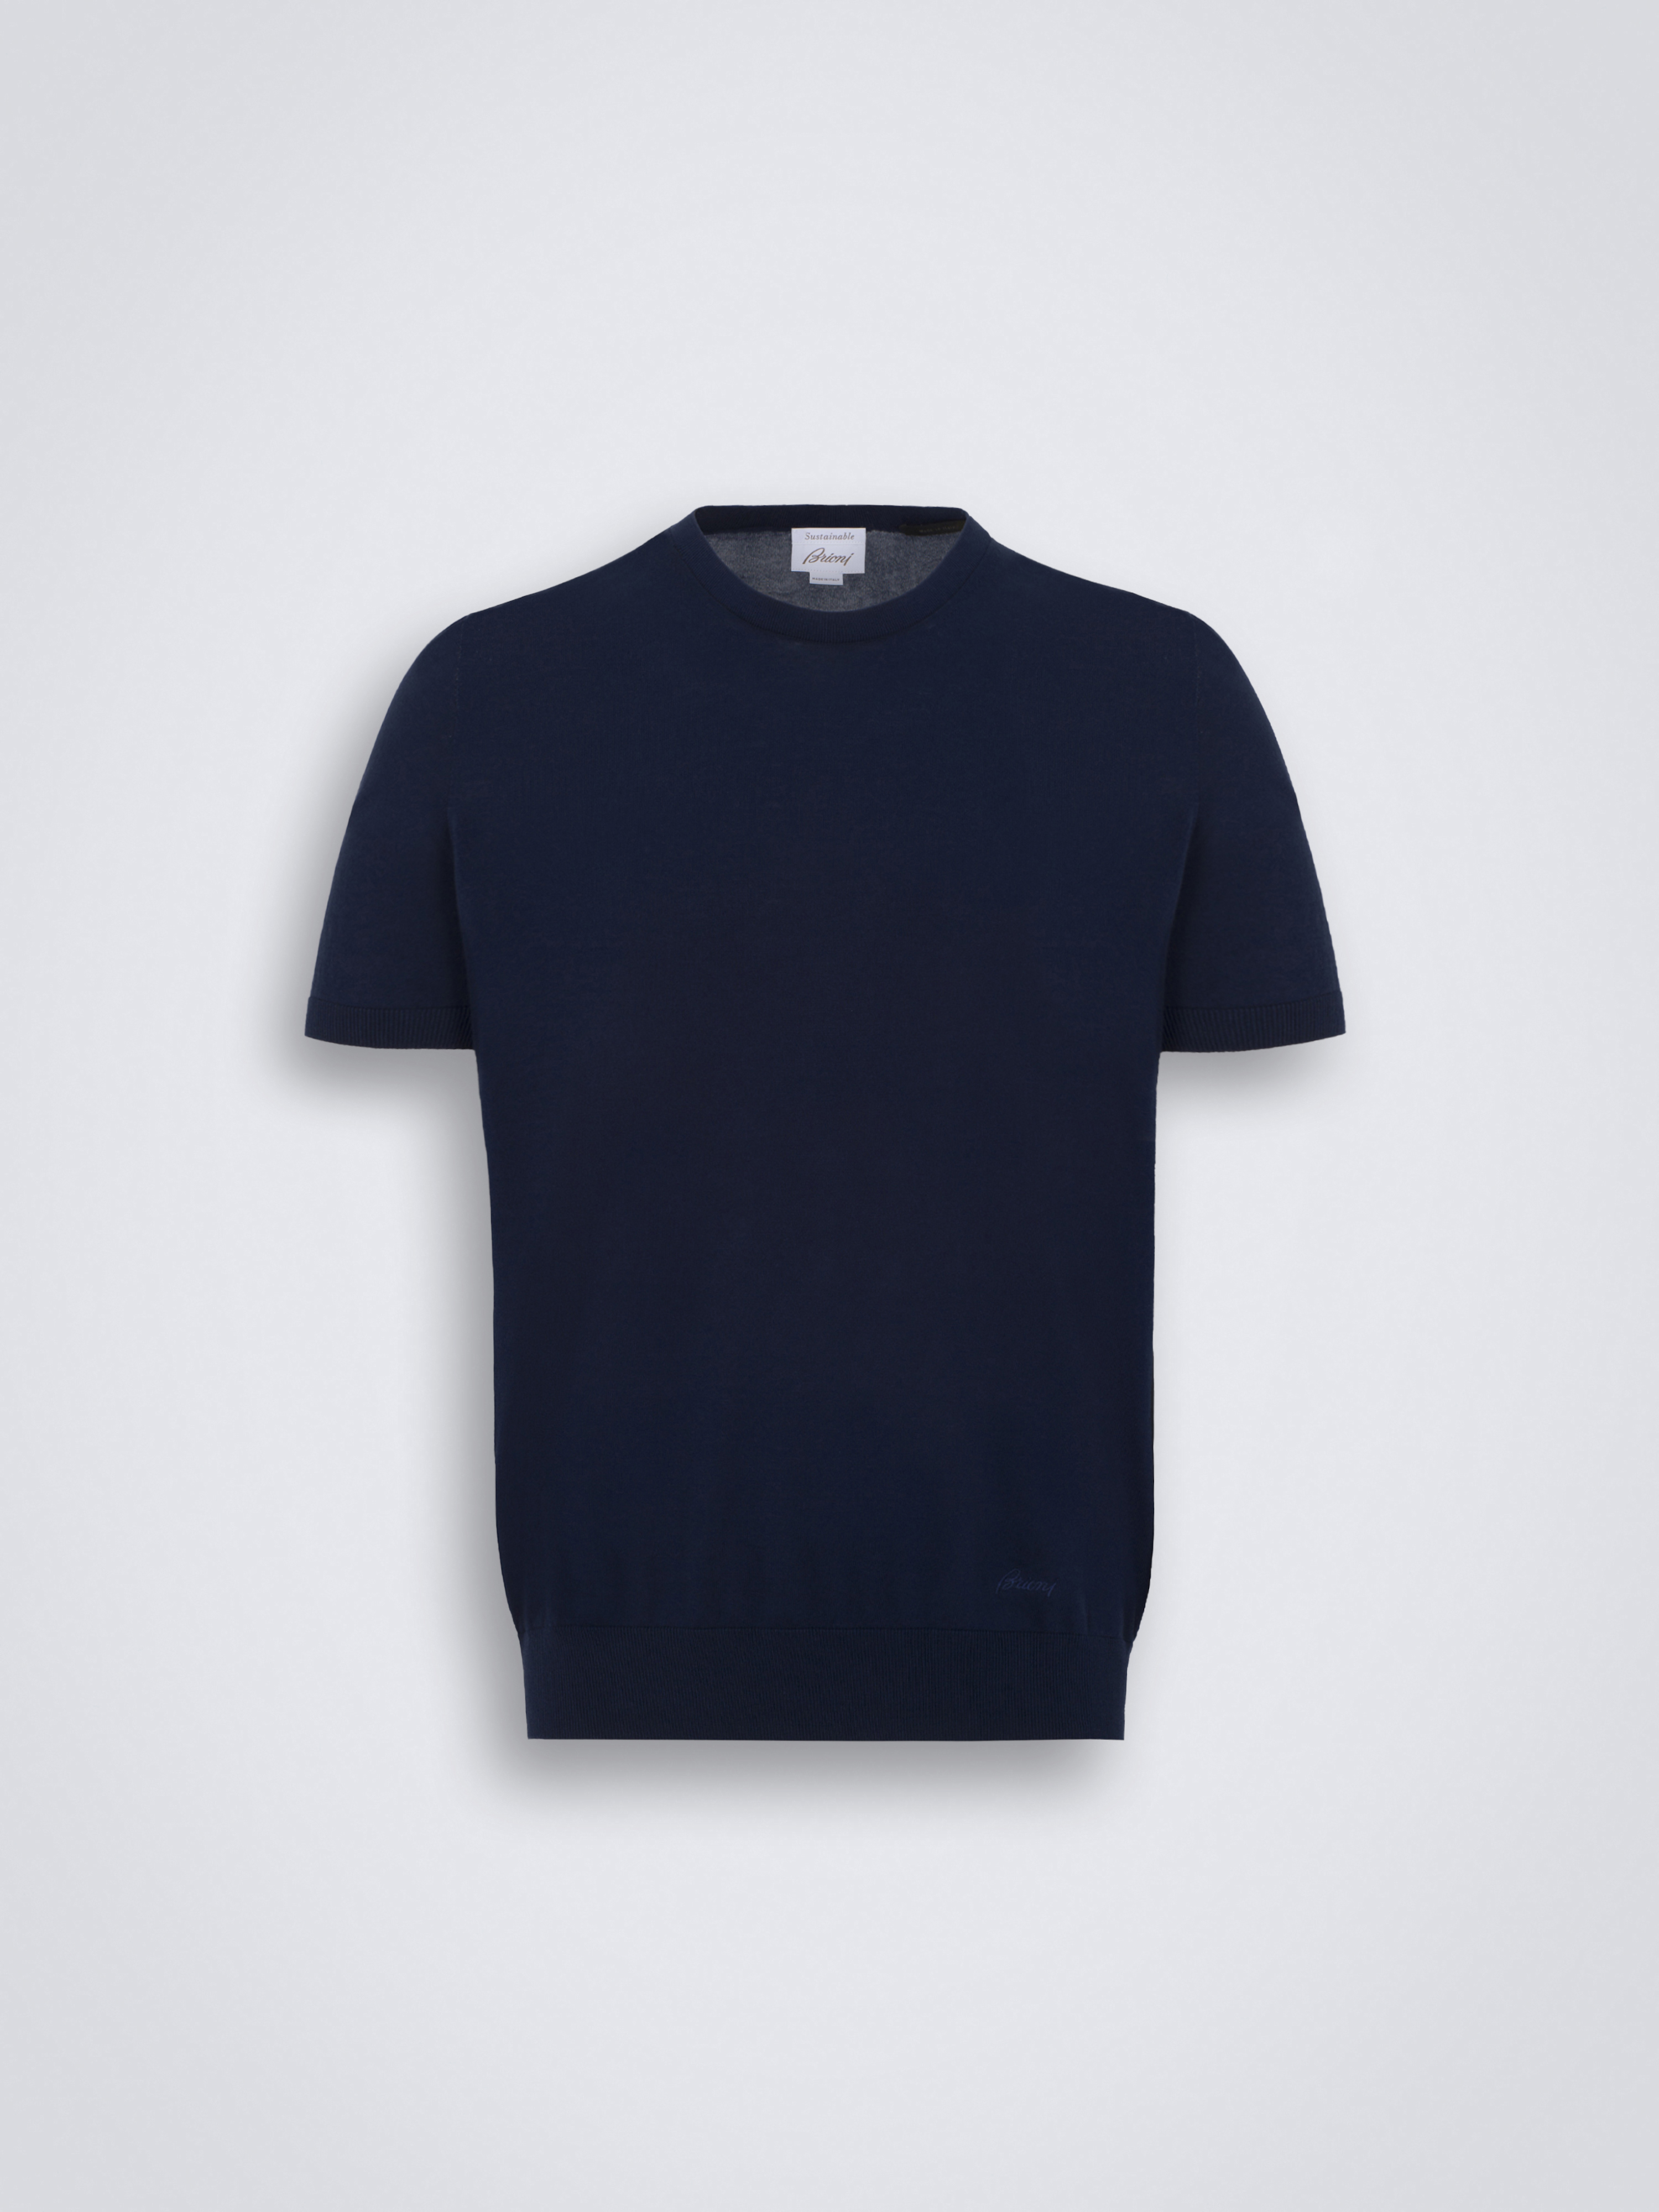 ネイビーブルー 100% サステナブルコットン Tシャツ | ブリオーニ